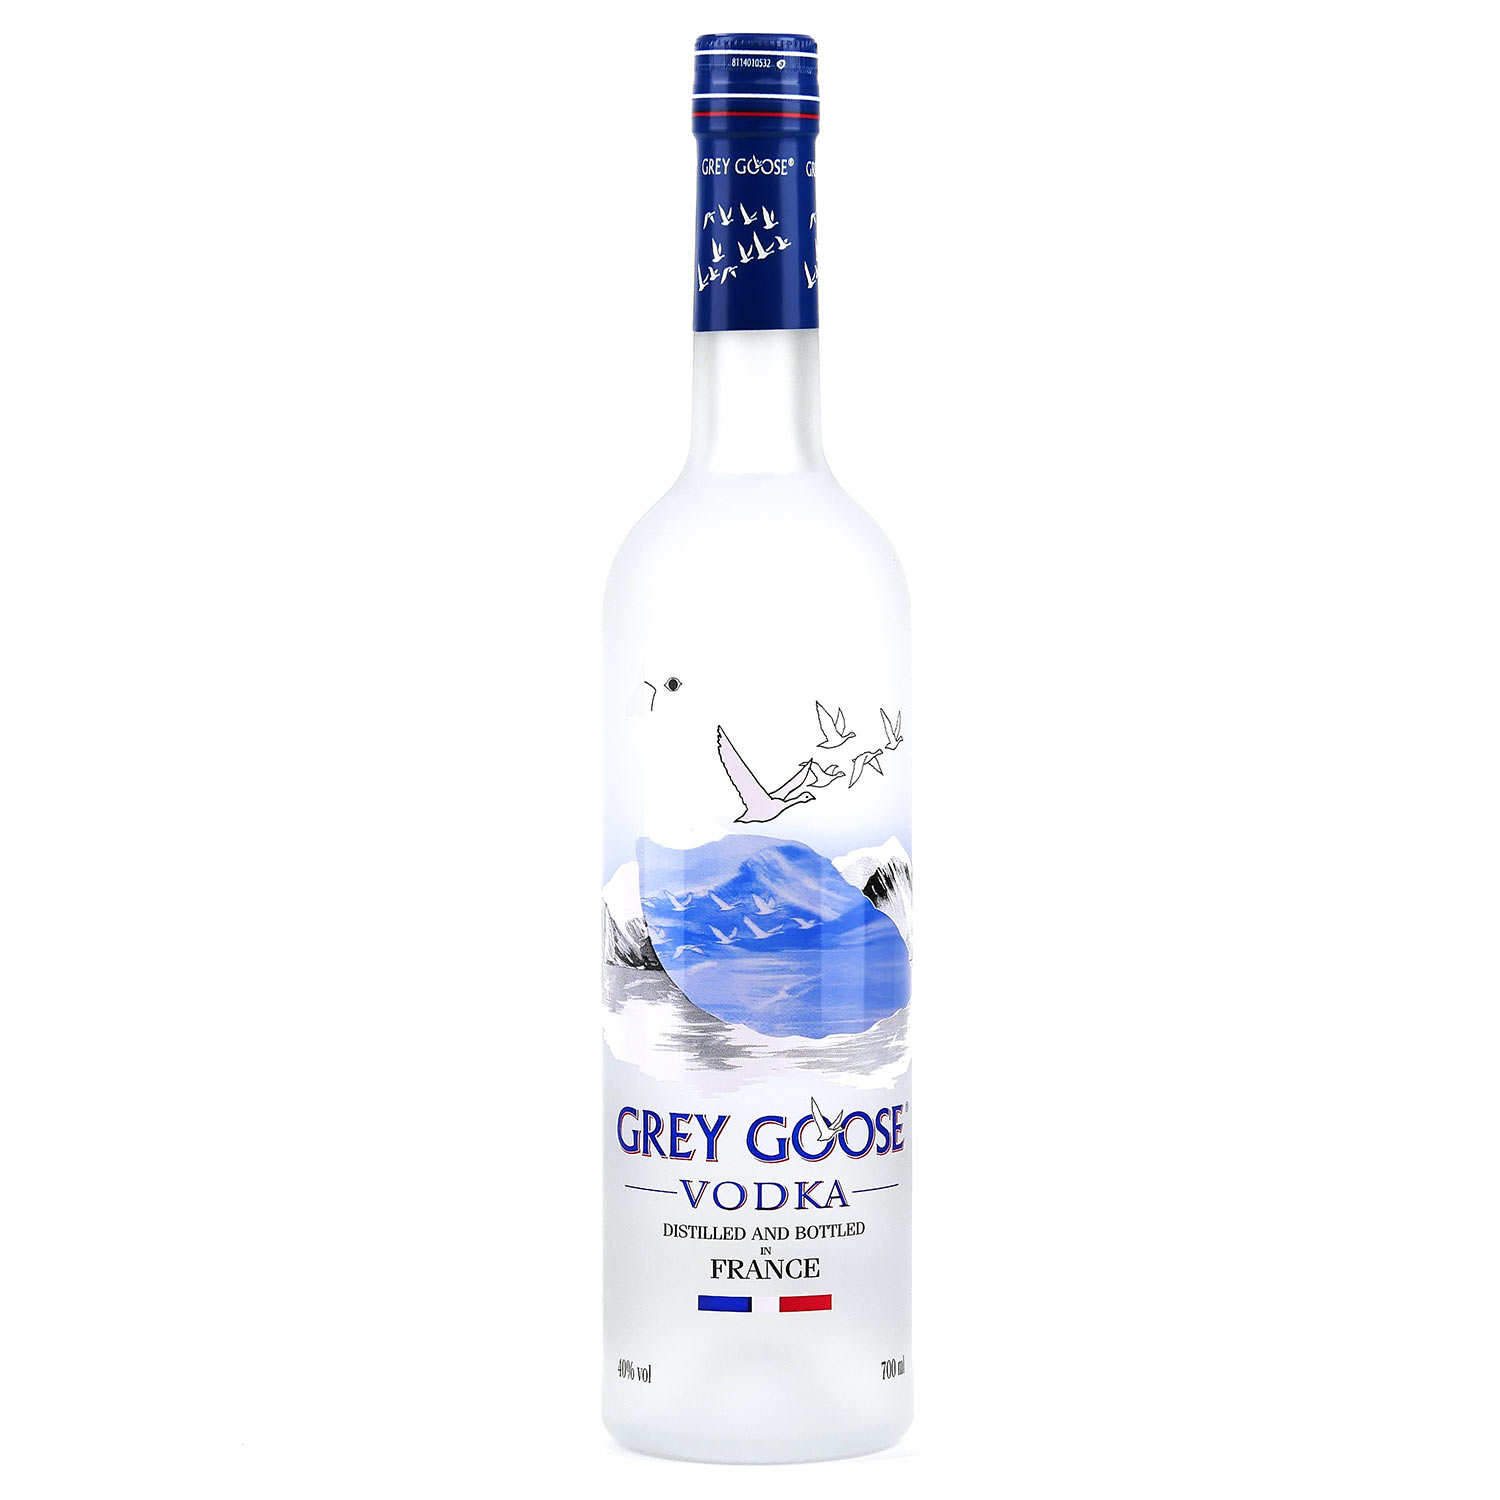 vodka-francesa-grey-goose-original-750ml-emp-rio-do-paraiso